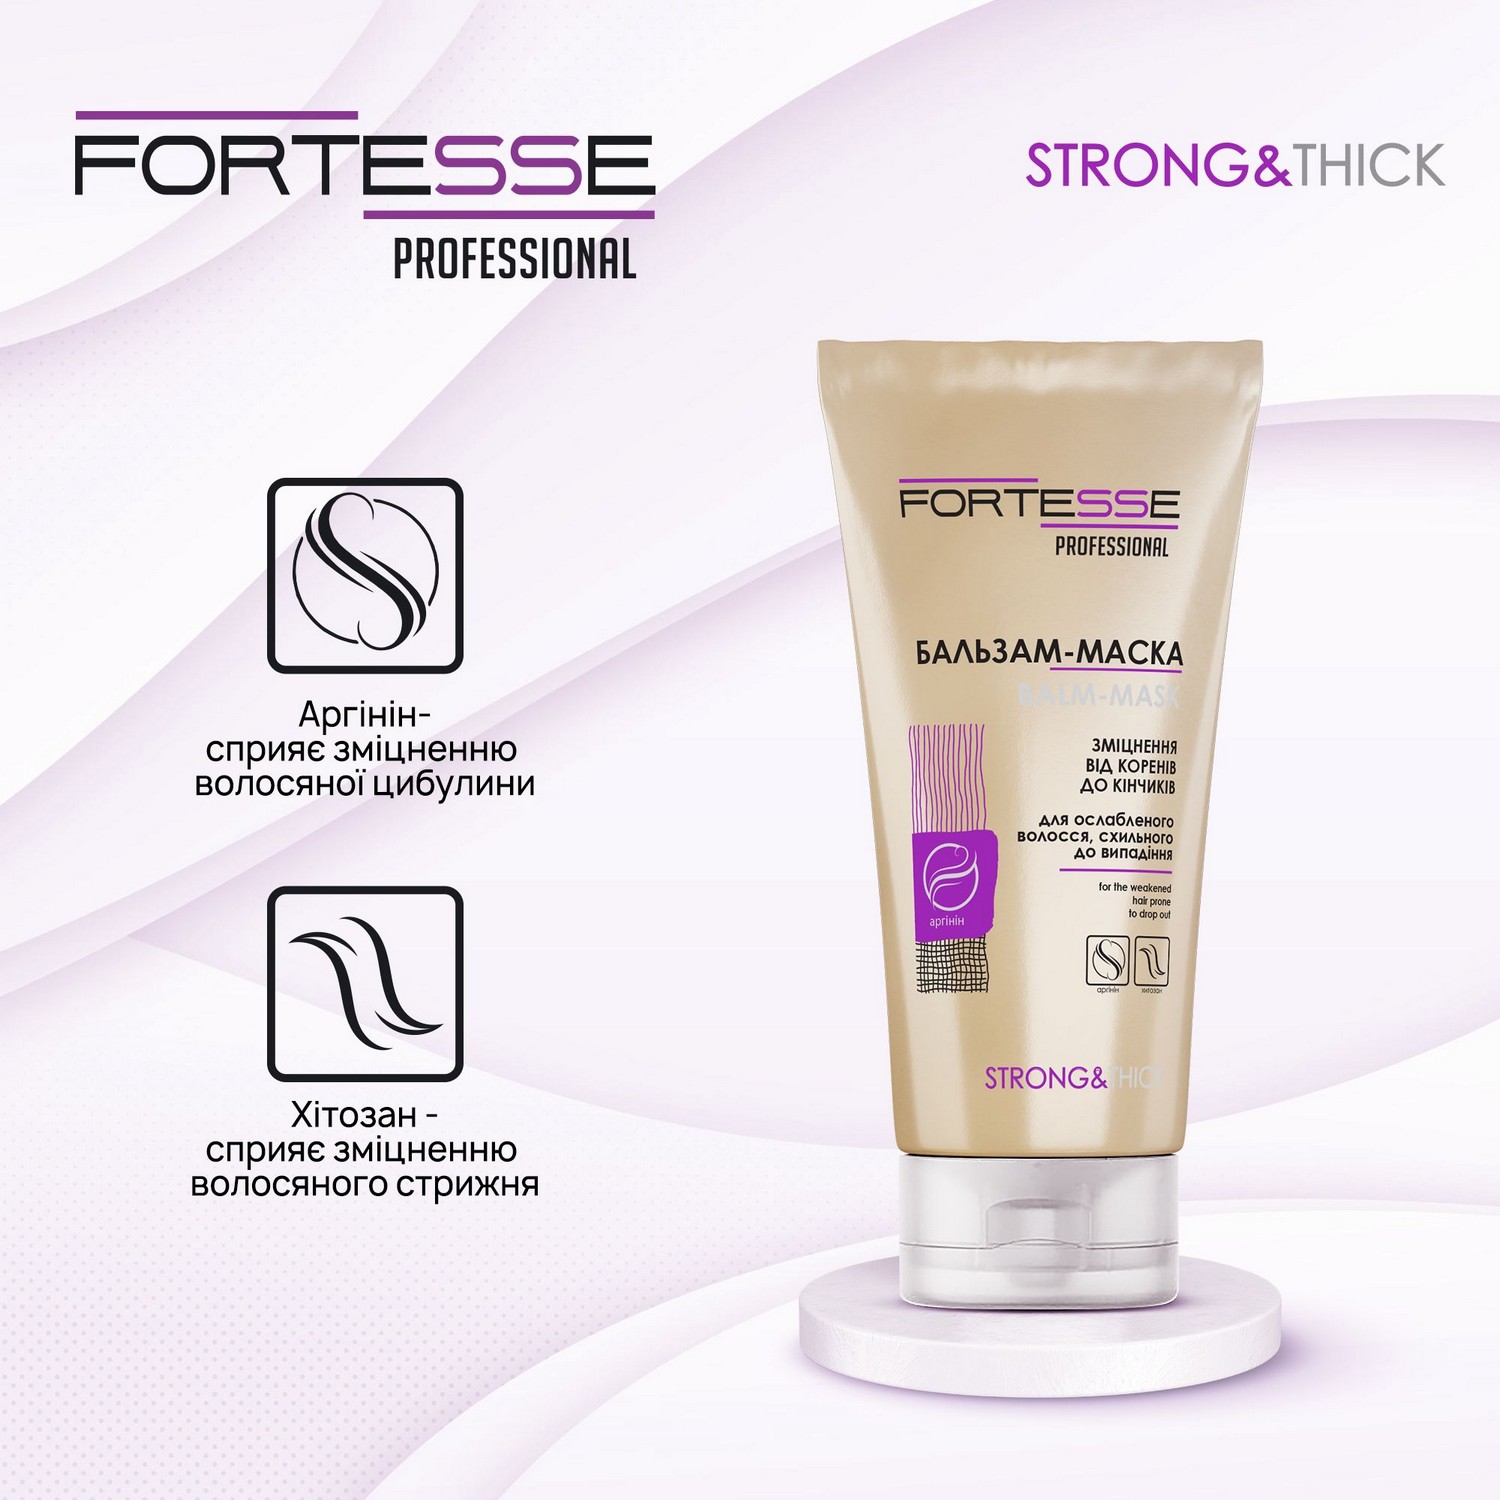 Зміцнююча бальзам-маска Fortesse Professional Strong&Thick для ослабленого волосся, схильного до випадіння, 200 мл - фото 3